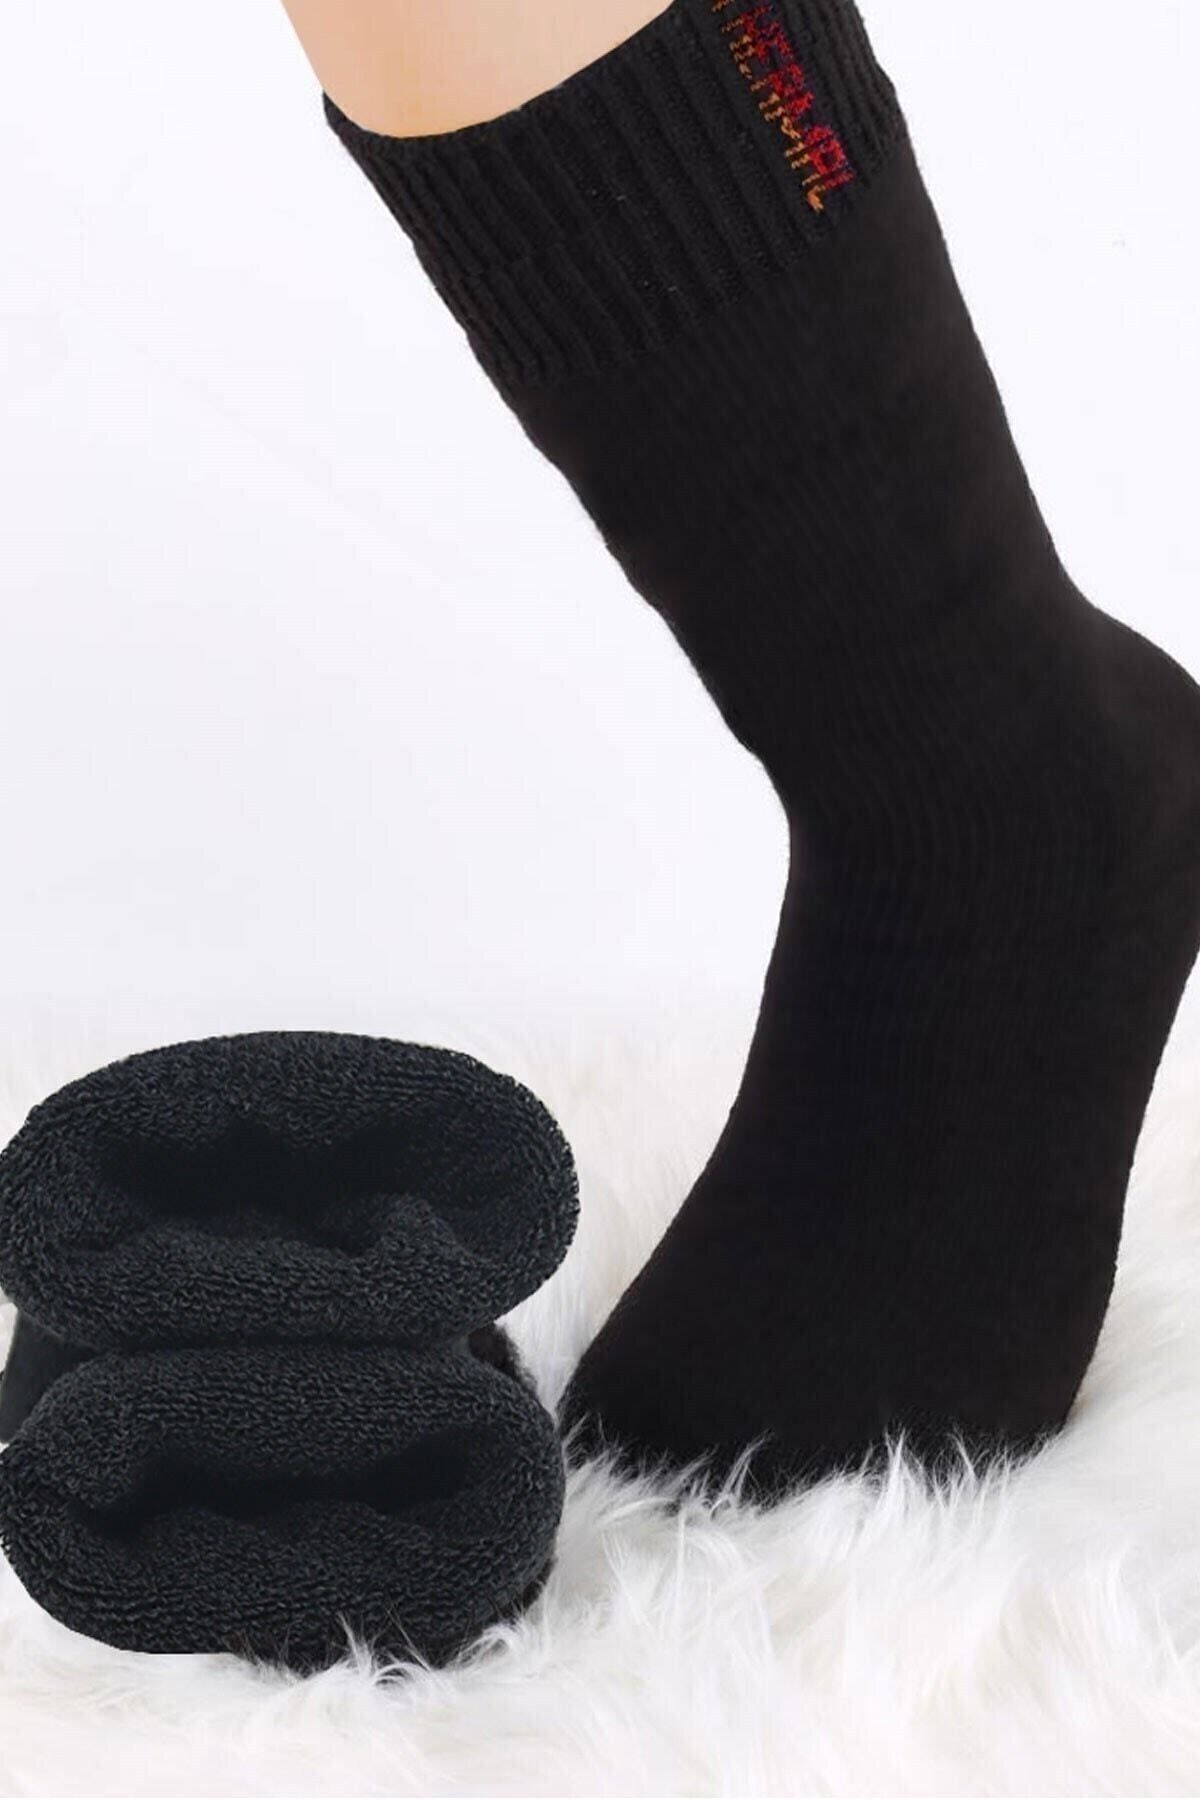 BlueStore 6 Çift Siyah Unisex Termal Havlu Kışlık Çorap